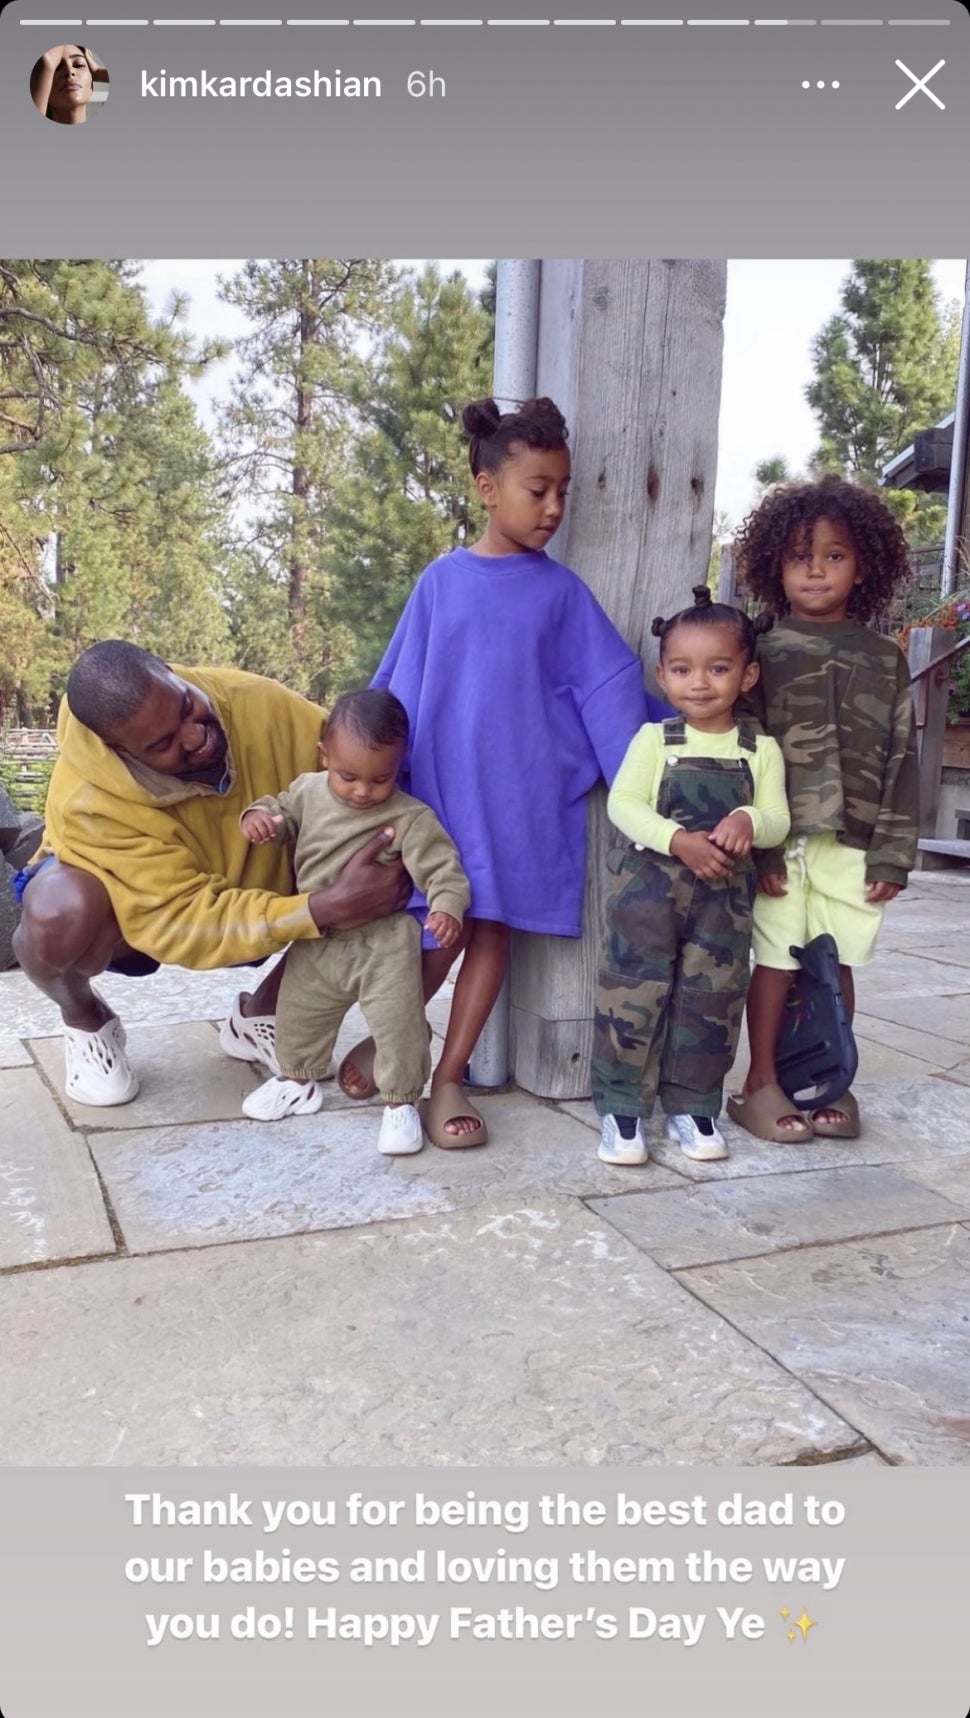 Kim Kardashian wishes Kanye West happy father's day